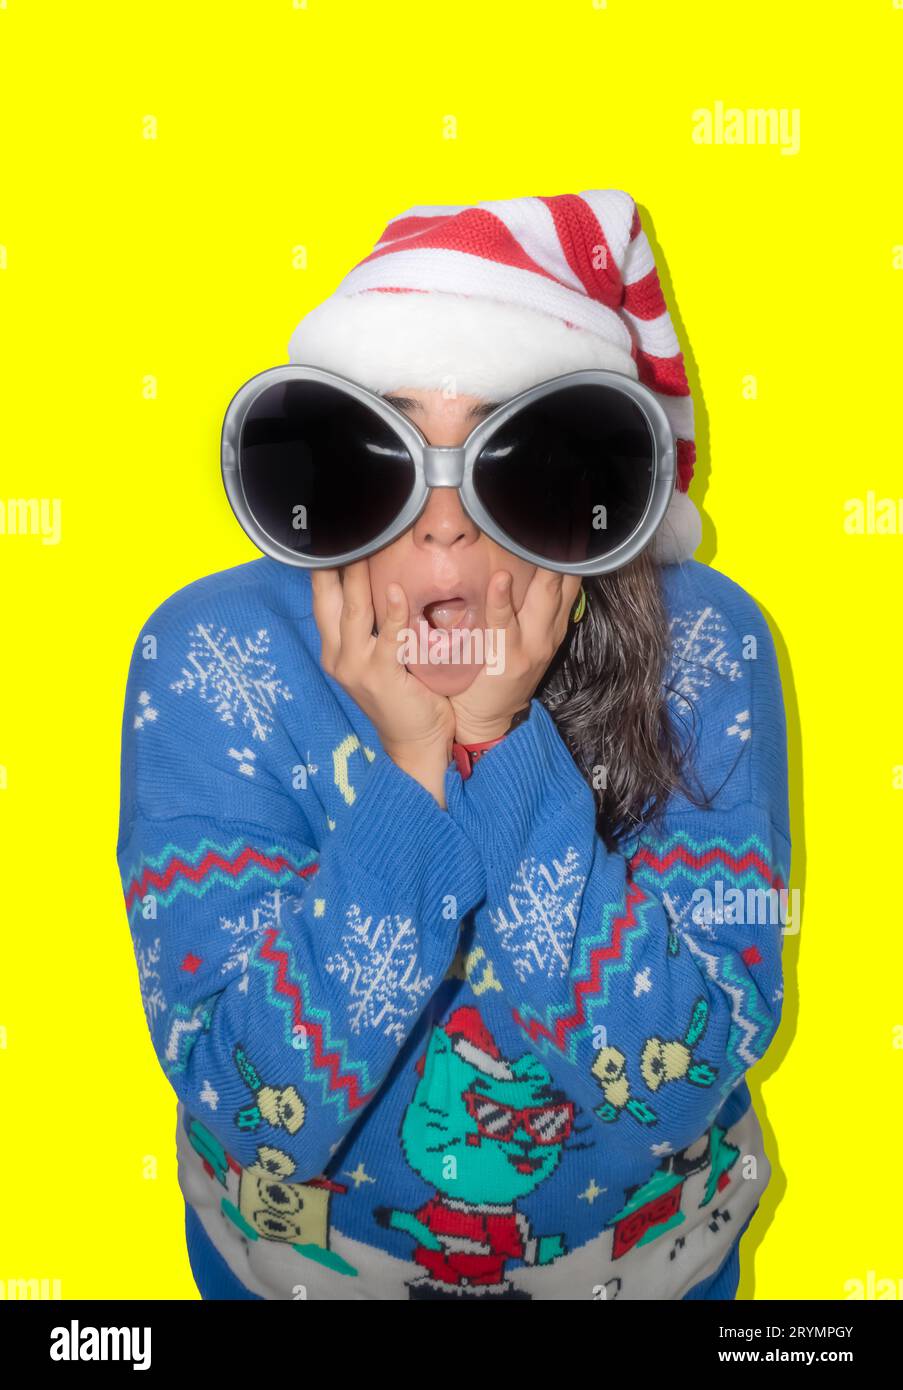 Femme aux cheveux longs, fait un geste surpris à la caméra. La femme est vêtue d'un pull bleu laid, d'un chapeau de Noël et de grandes lunettes. Studio Banque D'Images